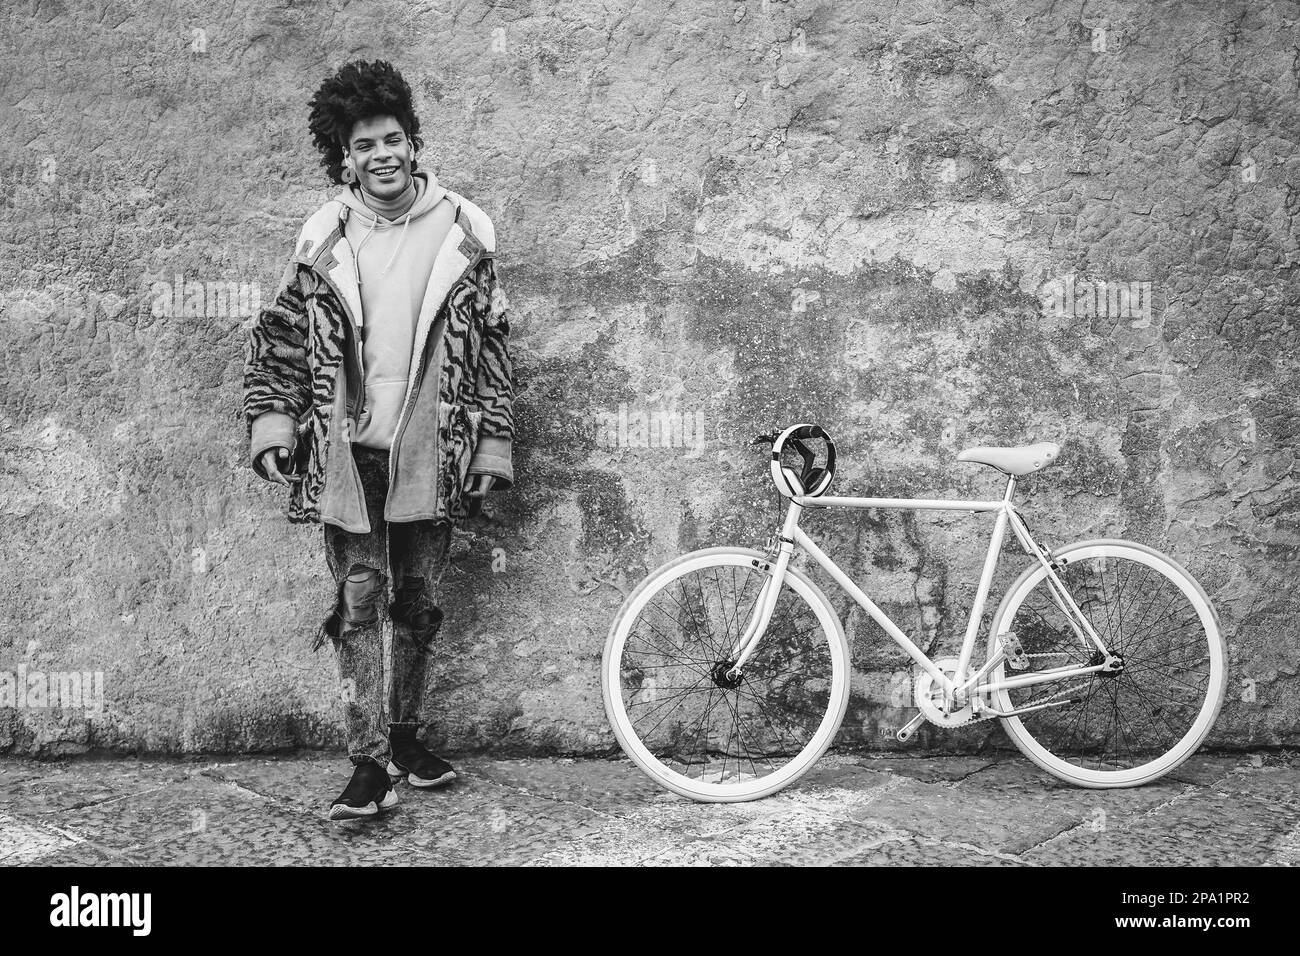 Jeune garçon africain s'amusant avec son vélo en plein air dans la ville - attention douce sur le visage - montage noir et blanc Banque D'Images